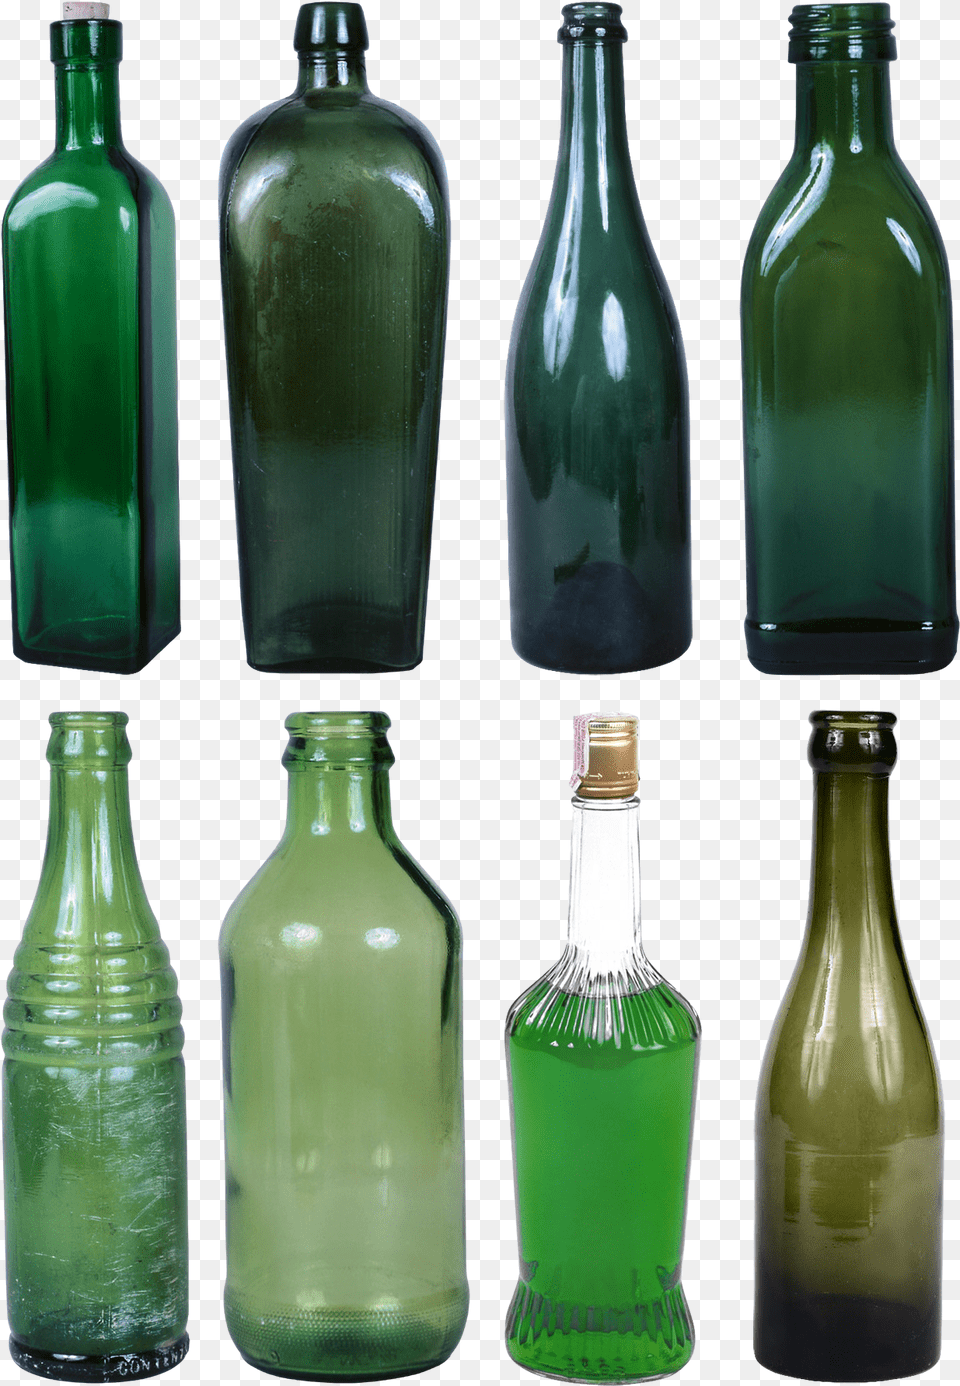 Soda Green Bottle Glass Bottles, Alcohol, Beer, Beverage Png Image